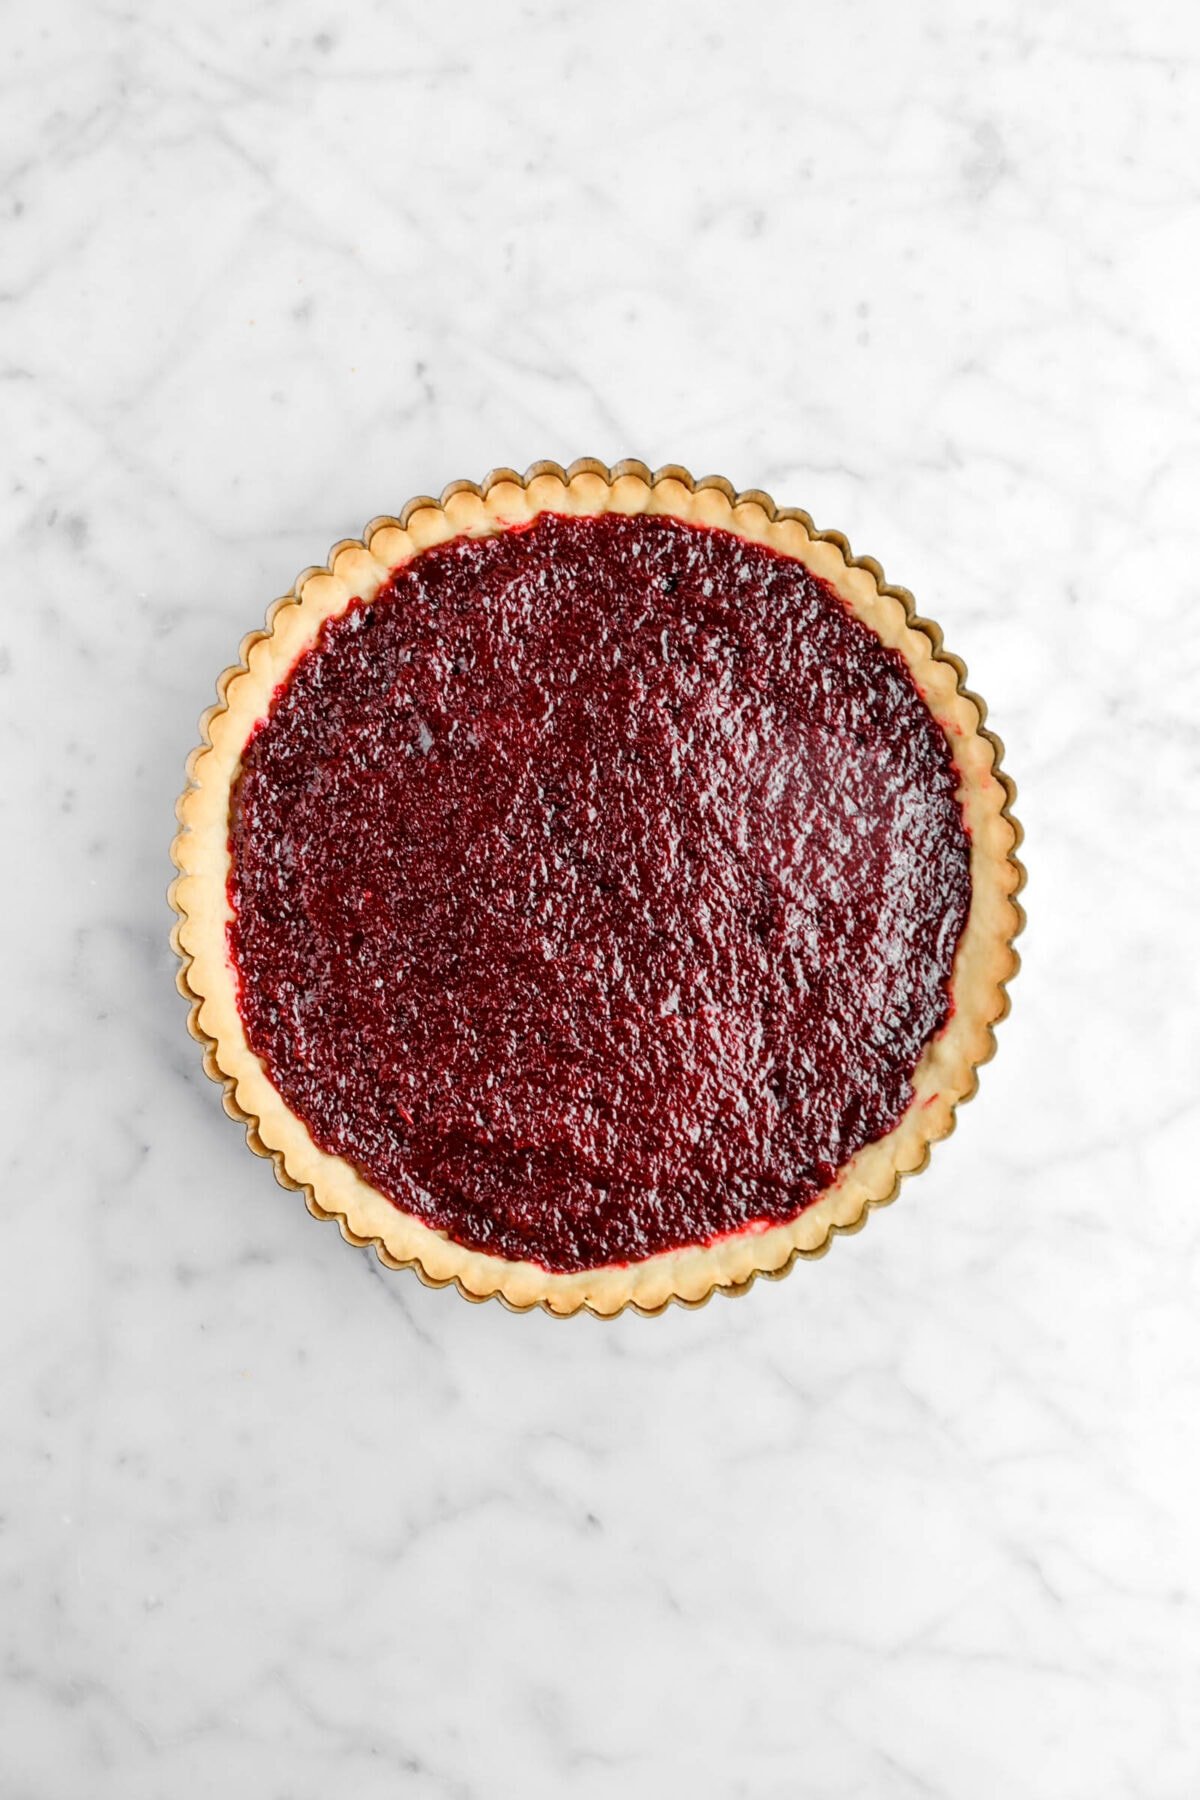 jam spread across bottom of tart